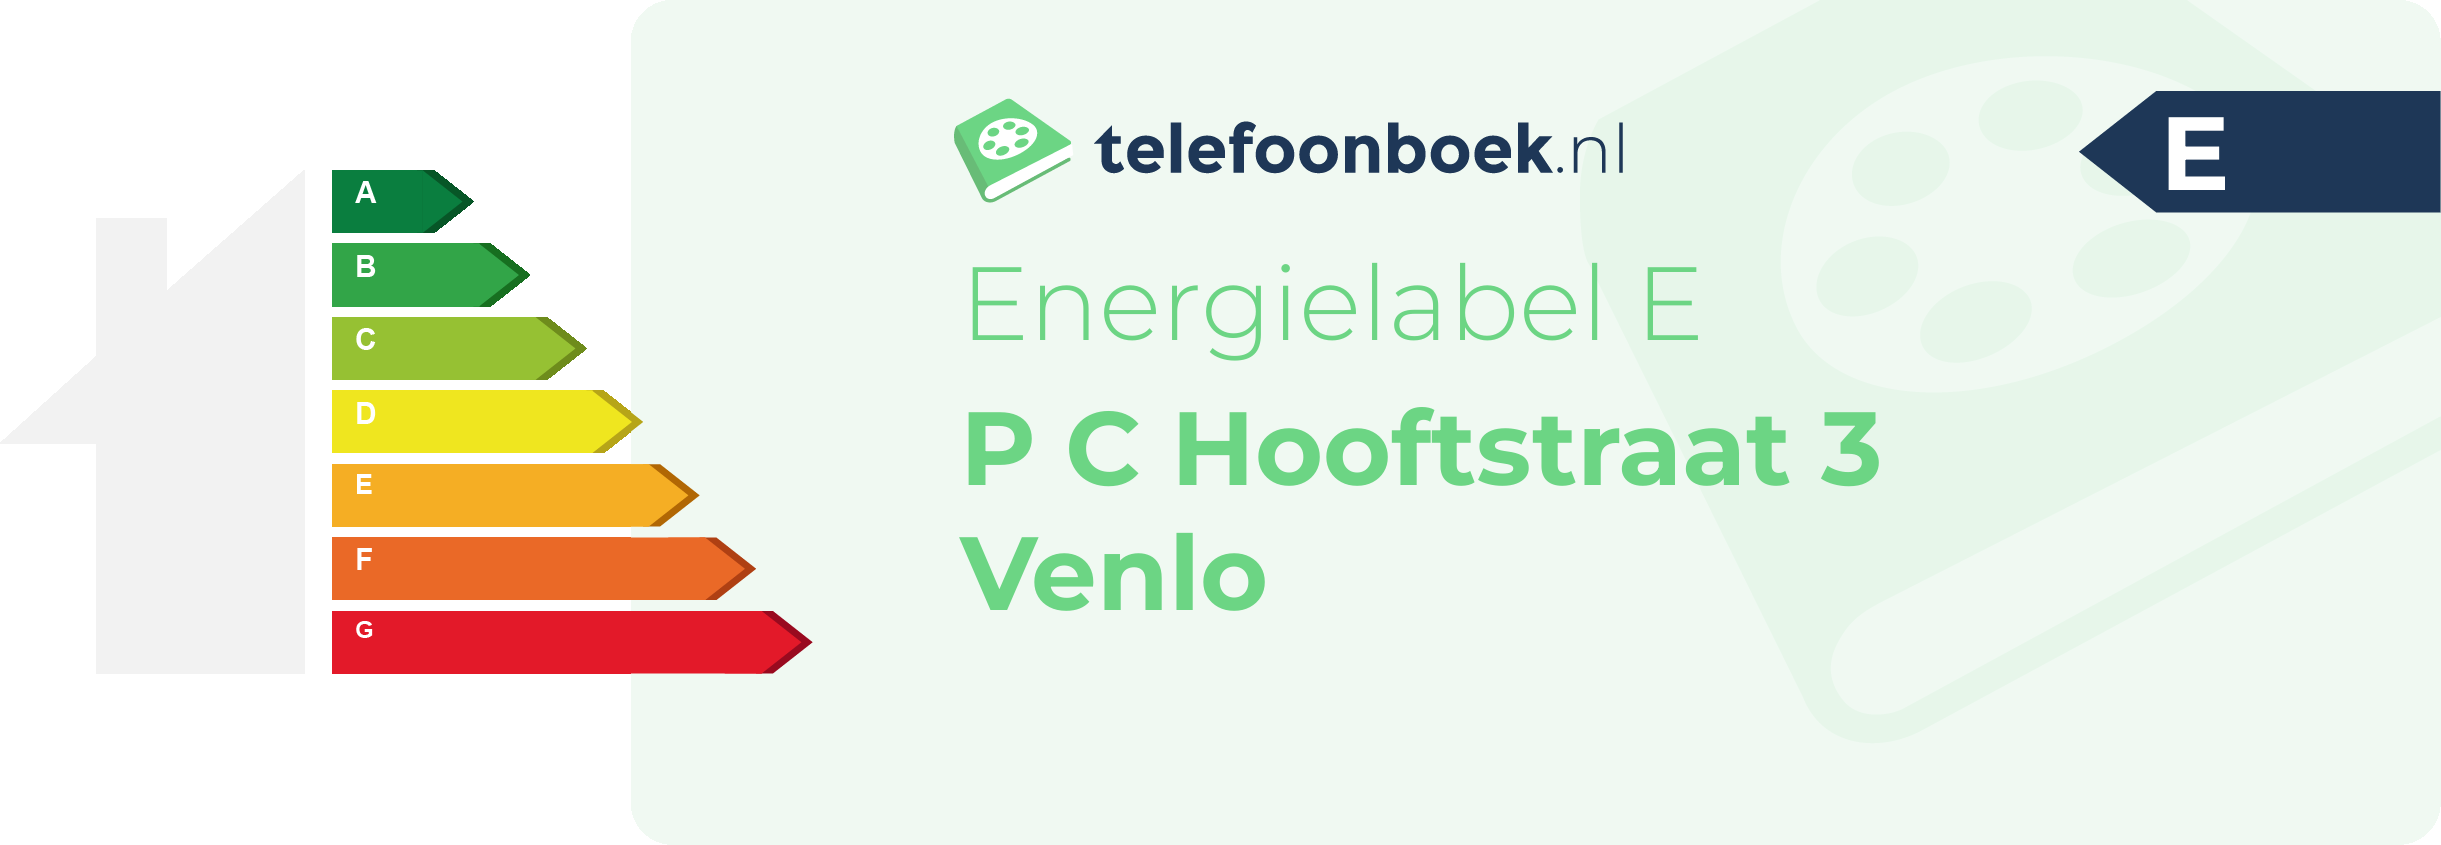 Energielabel P C Hooftstraat 3 Venlo